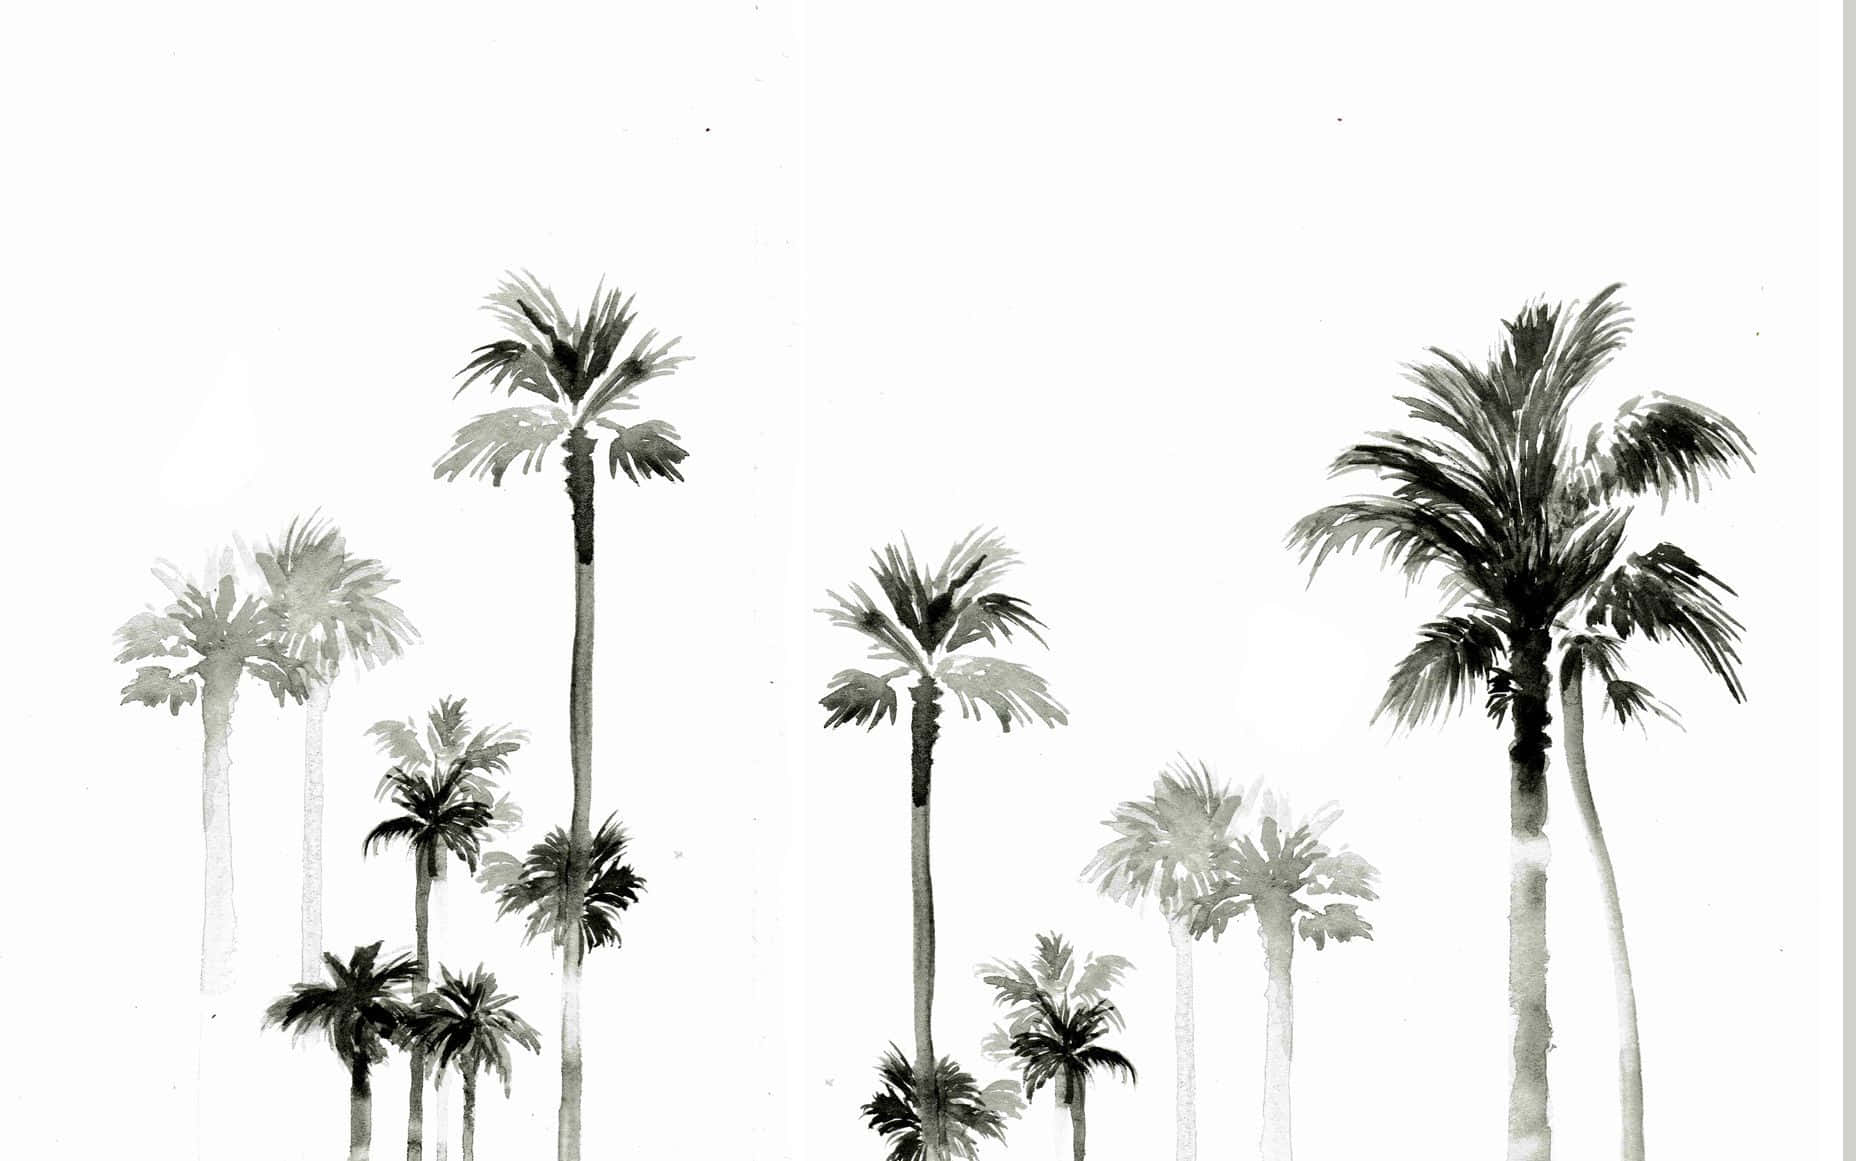 Umcontraste Impressionante De Cores Preto E Branco, Esta Palmeira É Alta E Tem Uma Graça Atraente. Papel de Parede